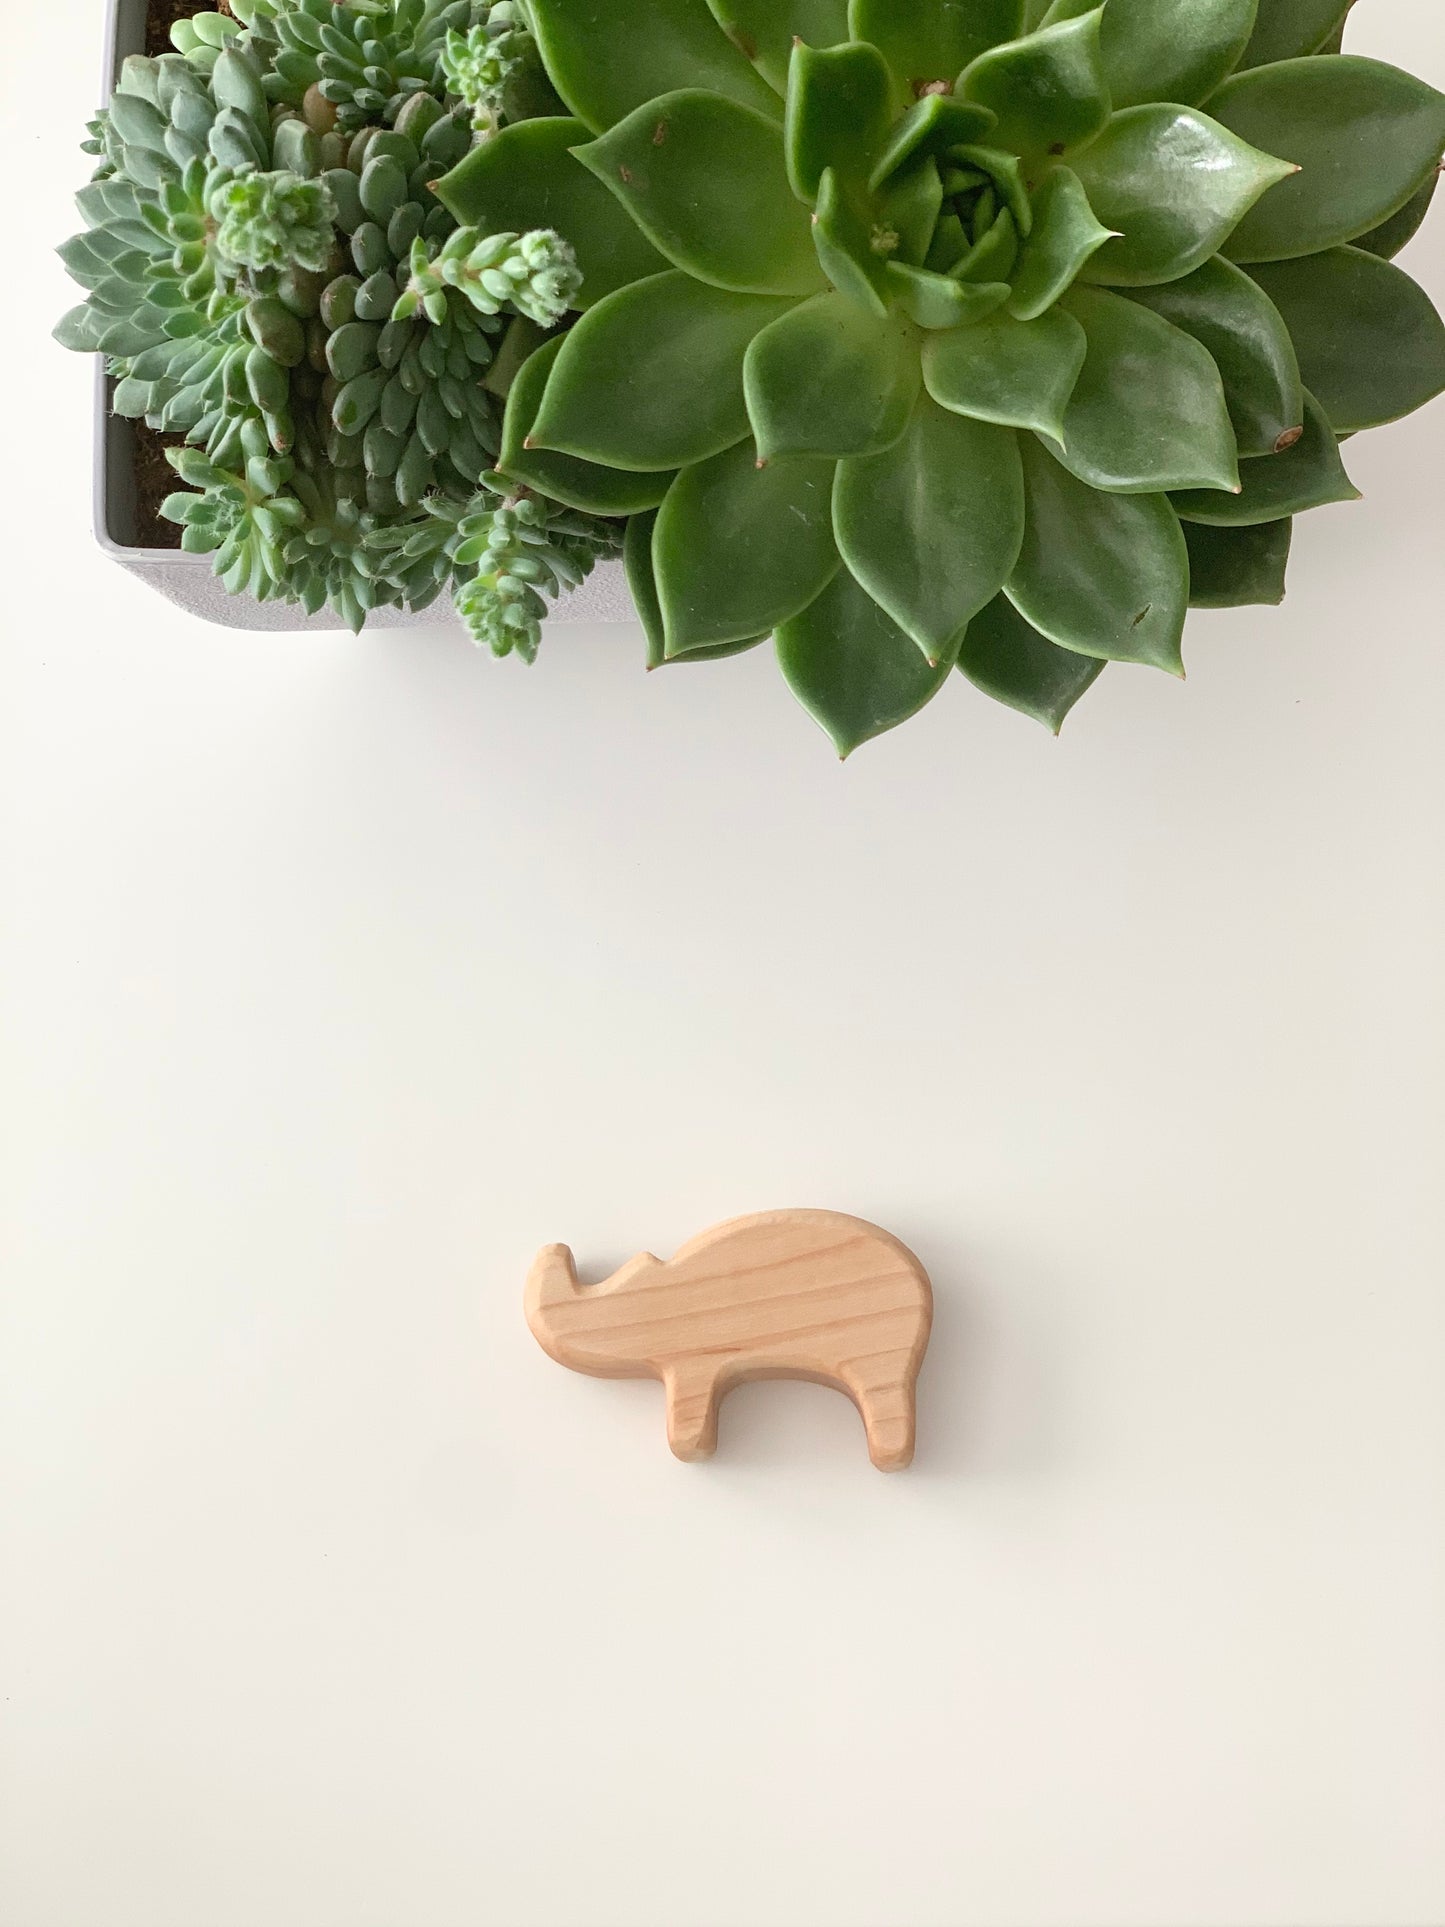 Rhinoceros Safari Animal Wood Toy Figurine